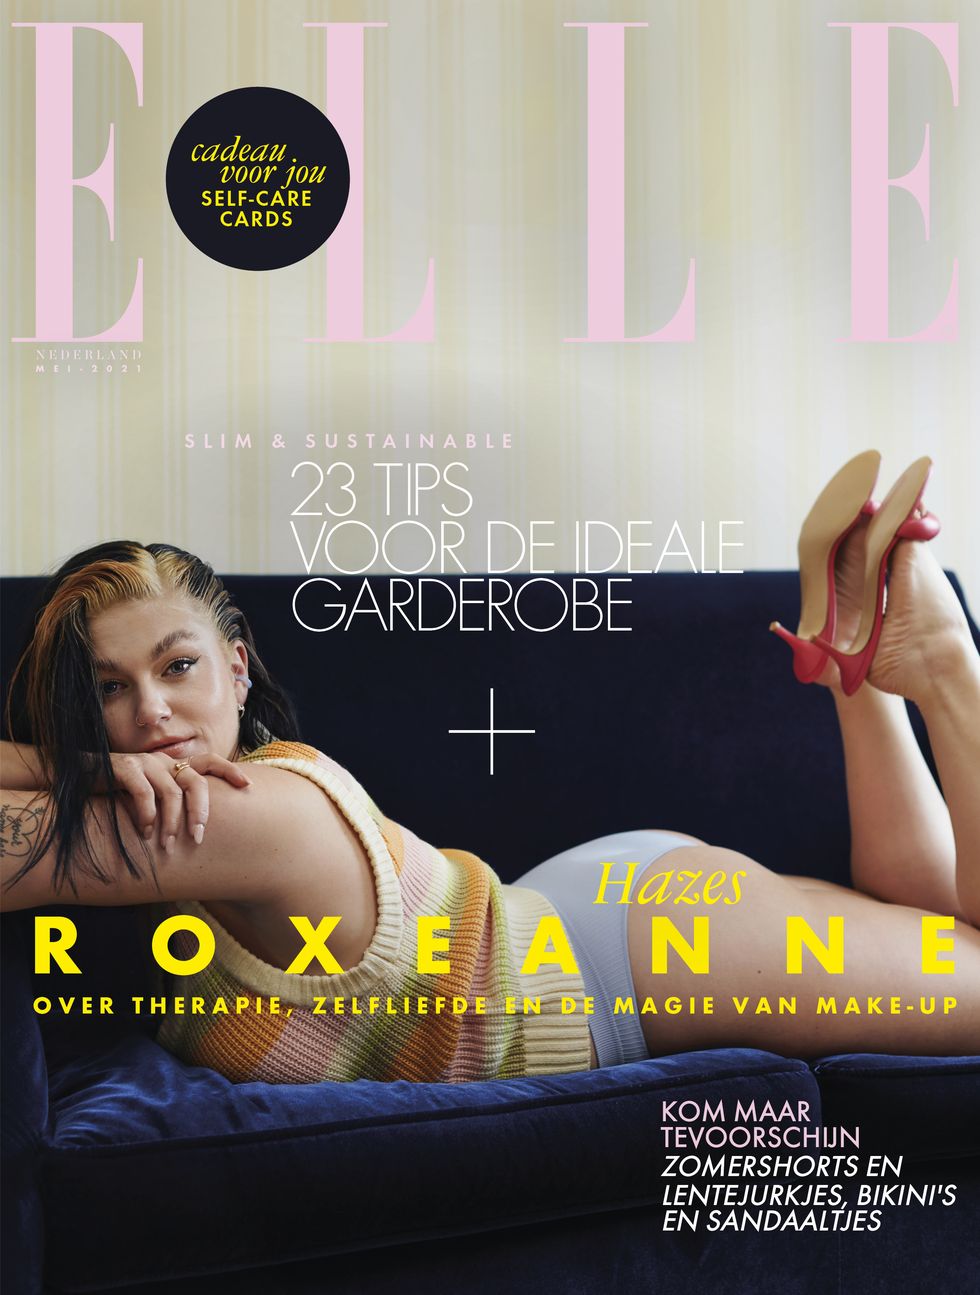 roxeanne hazes poseert in een roze top voor het tijdschrift elle nederland